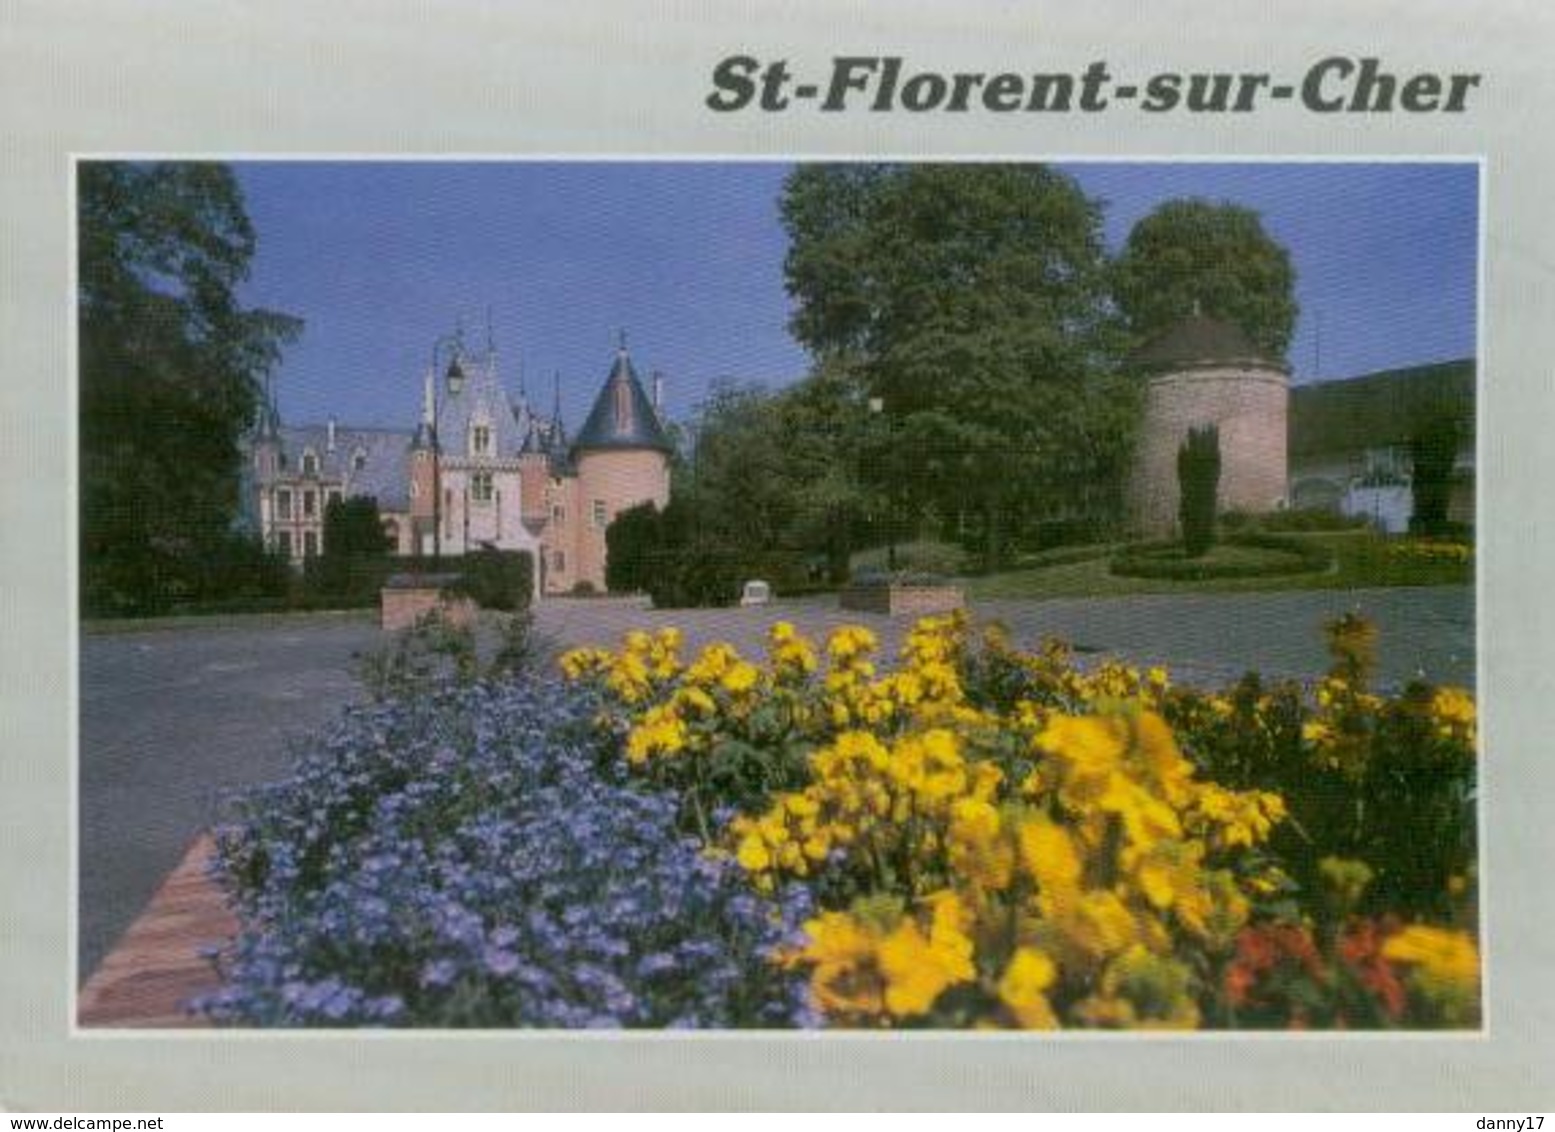 Chateau - Saint-Florent-sur-Cher